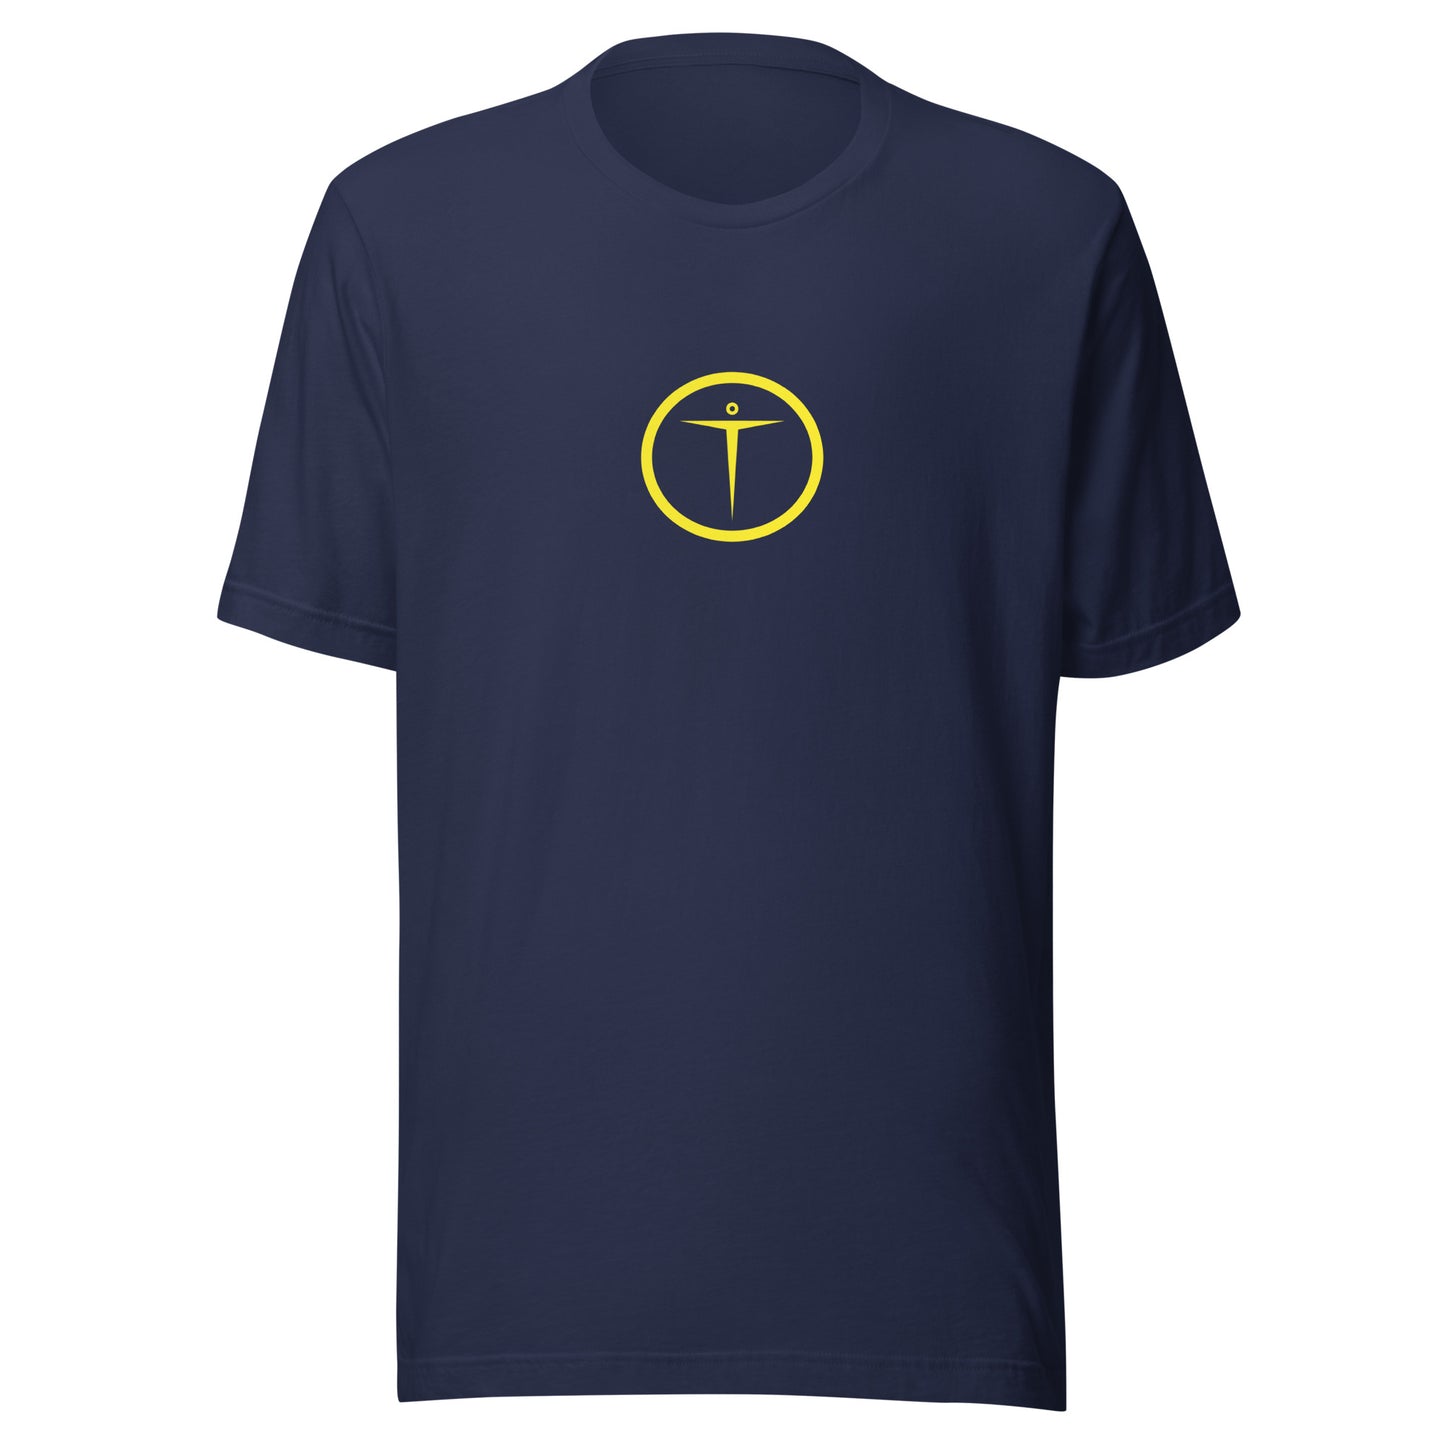 TORAYON (Y) Unisex t-shirt